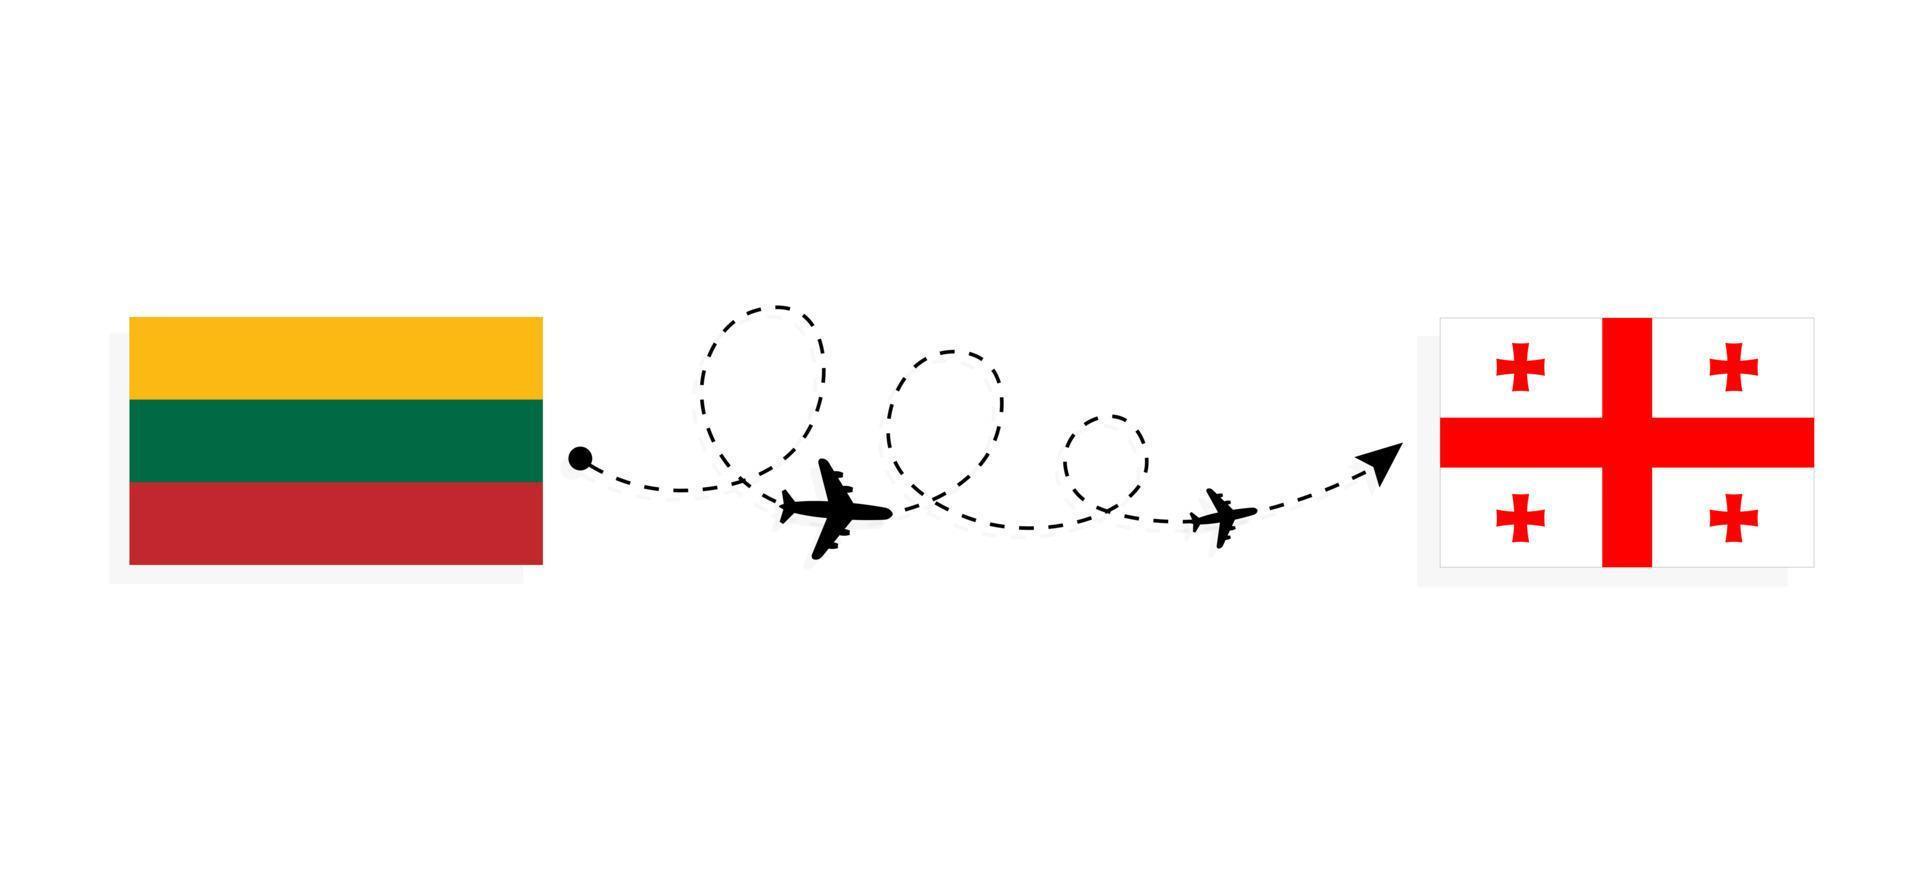 flyg och resor från Litauen till Georgien med passagerarflygplan vektor